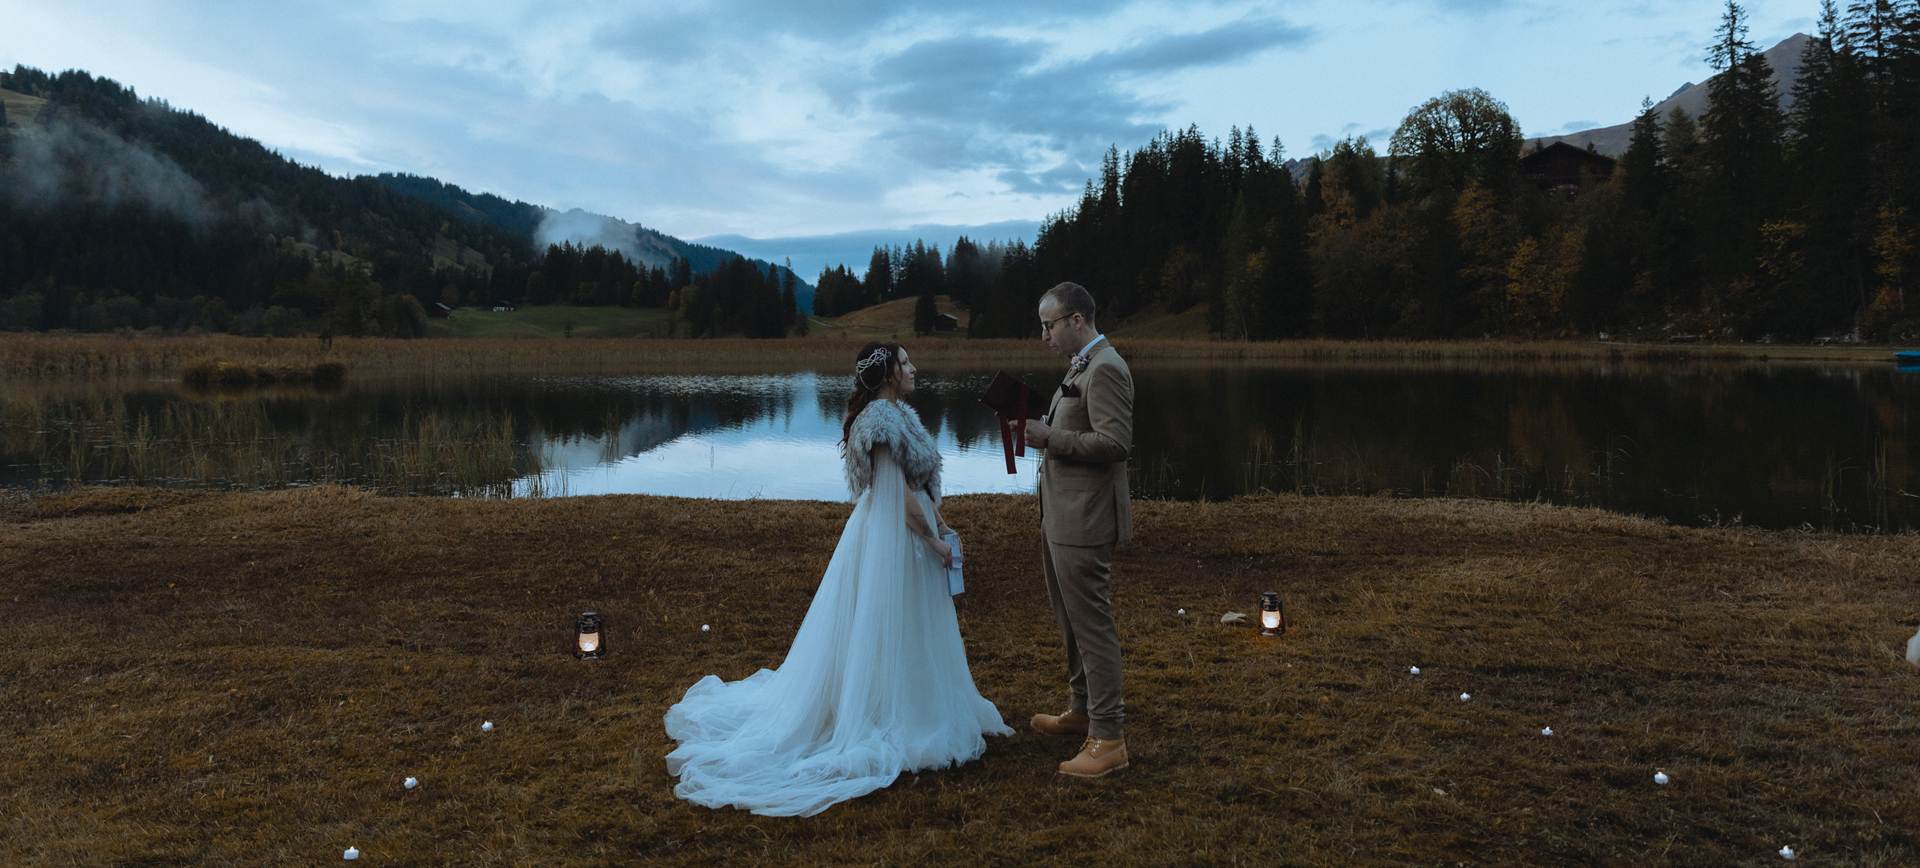 Elopement in Switzerland Wedding Destination